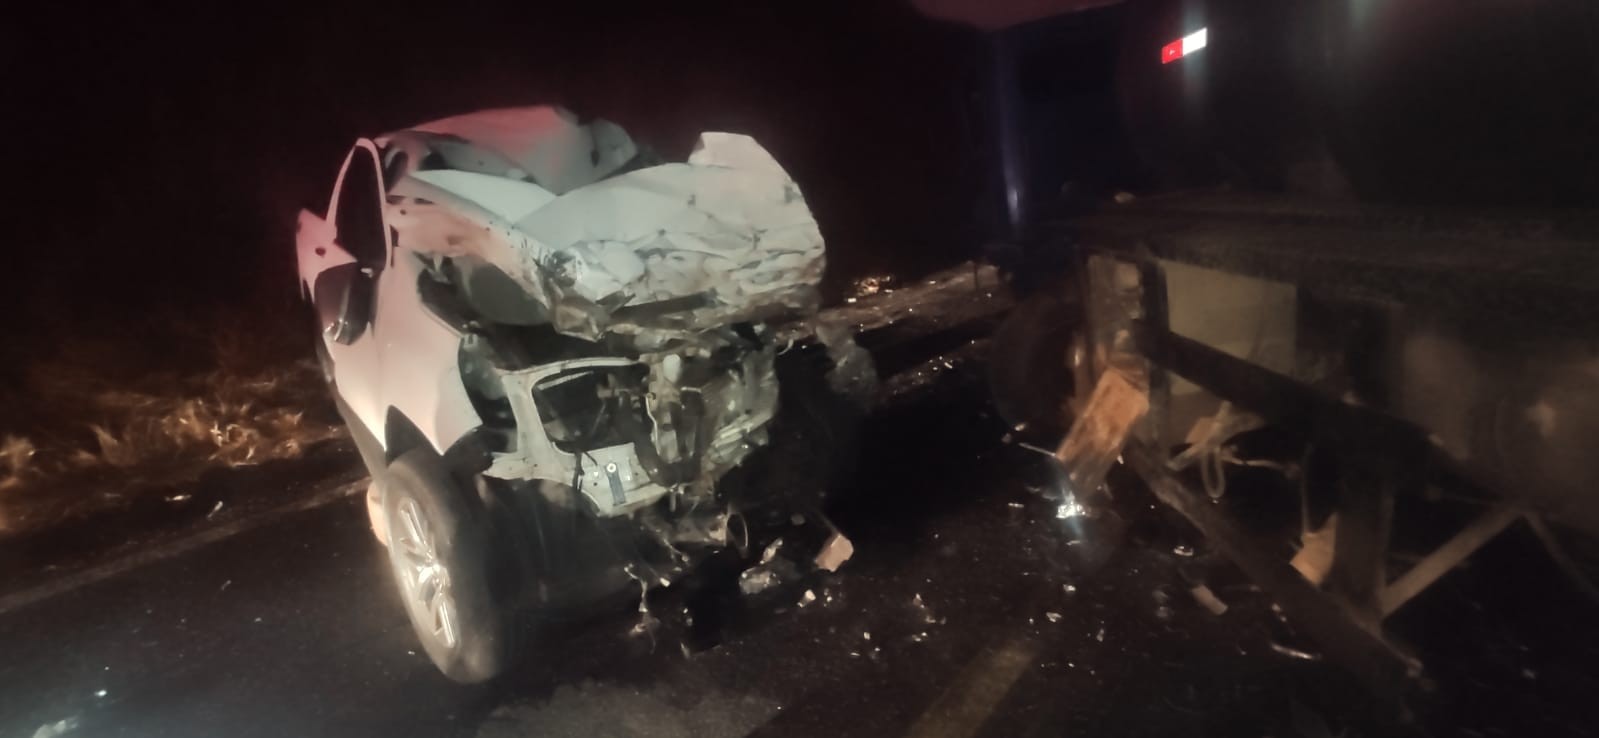 Motorista fica em estado grave após bater caminhonete em caminhão na MG-133, entre Piau e Tabuleiro